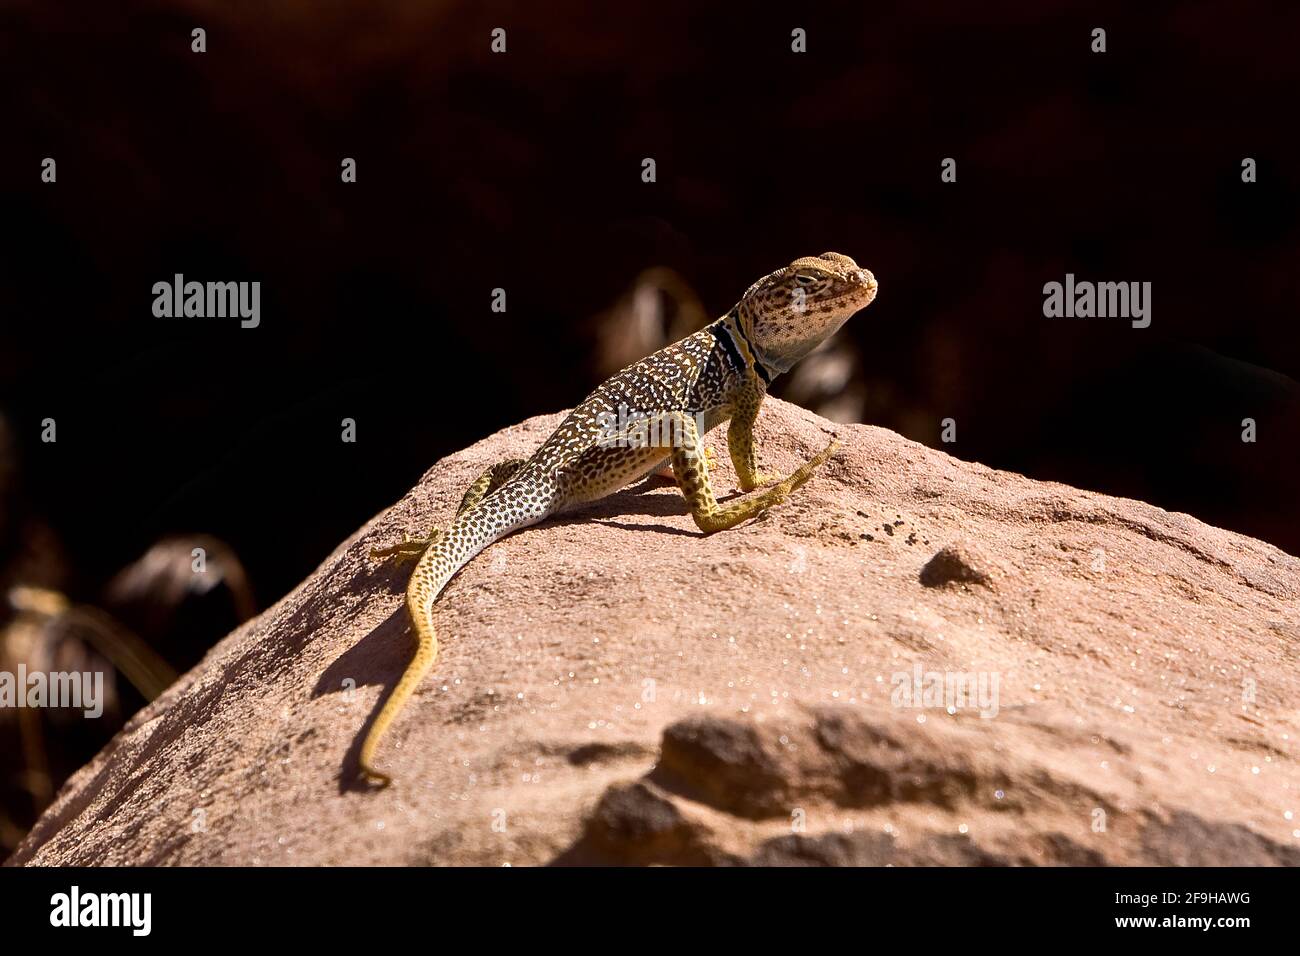 Ein männlicher Eidechse der Eastern Collared Lizard, Crotaphytus collaris, der sich in der Sonne sonnt, um seine Körpertemperatur zu erhöhen. Weil Eidechsen kaltblütig sind, reglementiern sie Stockfoto